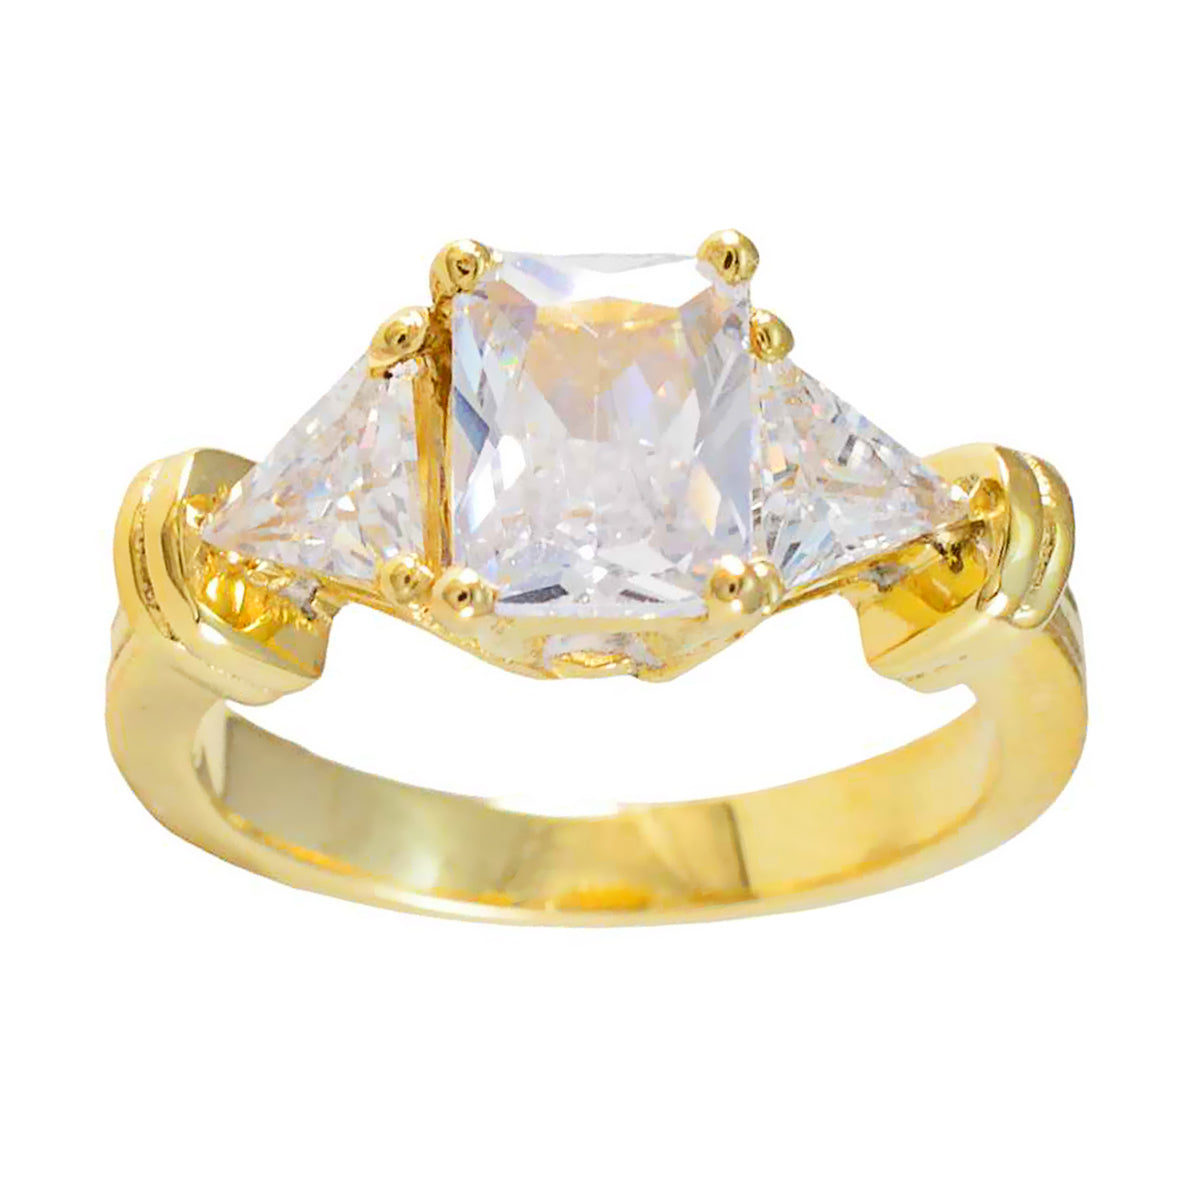 Ring aus reifem Riyo-Silber mit gelbvergoldetem, weißem CZ-Stein, Ring mit Krappenfassung in mehreren Formen